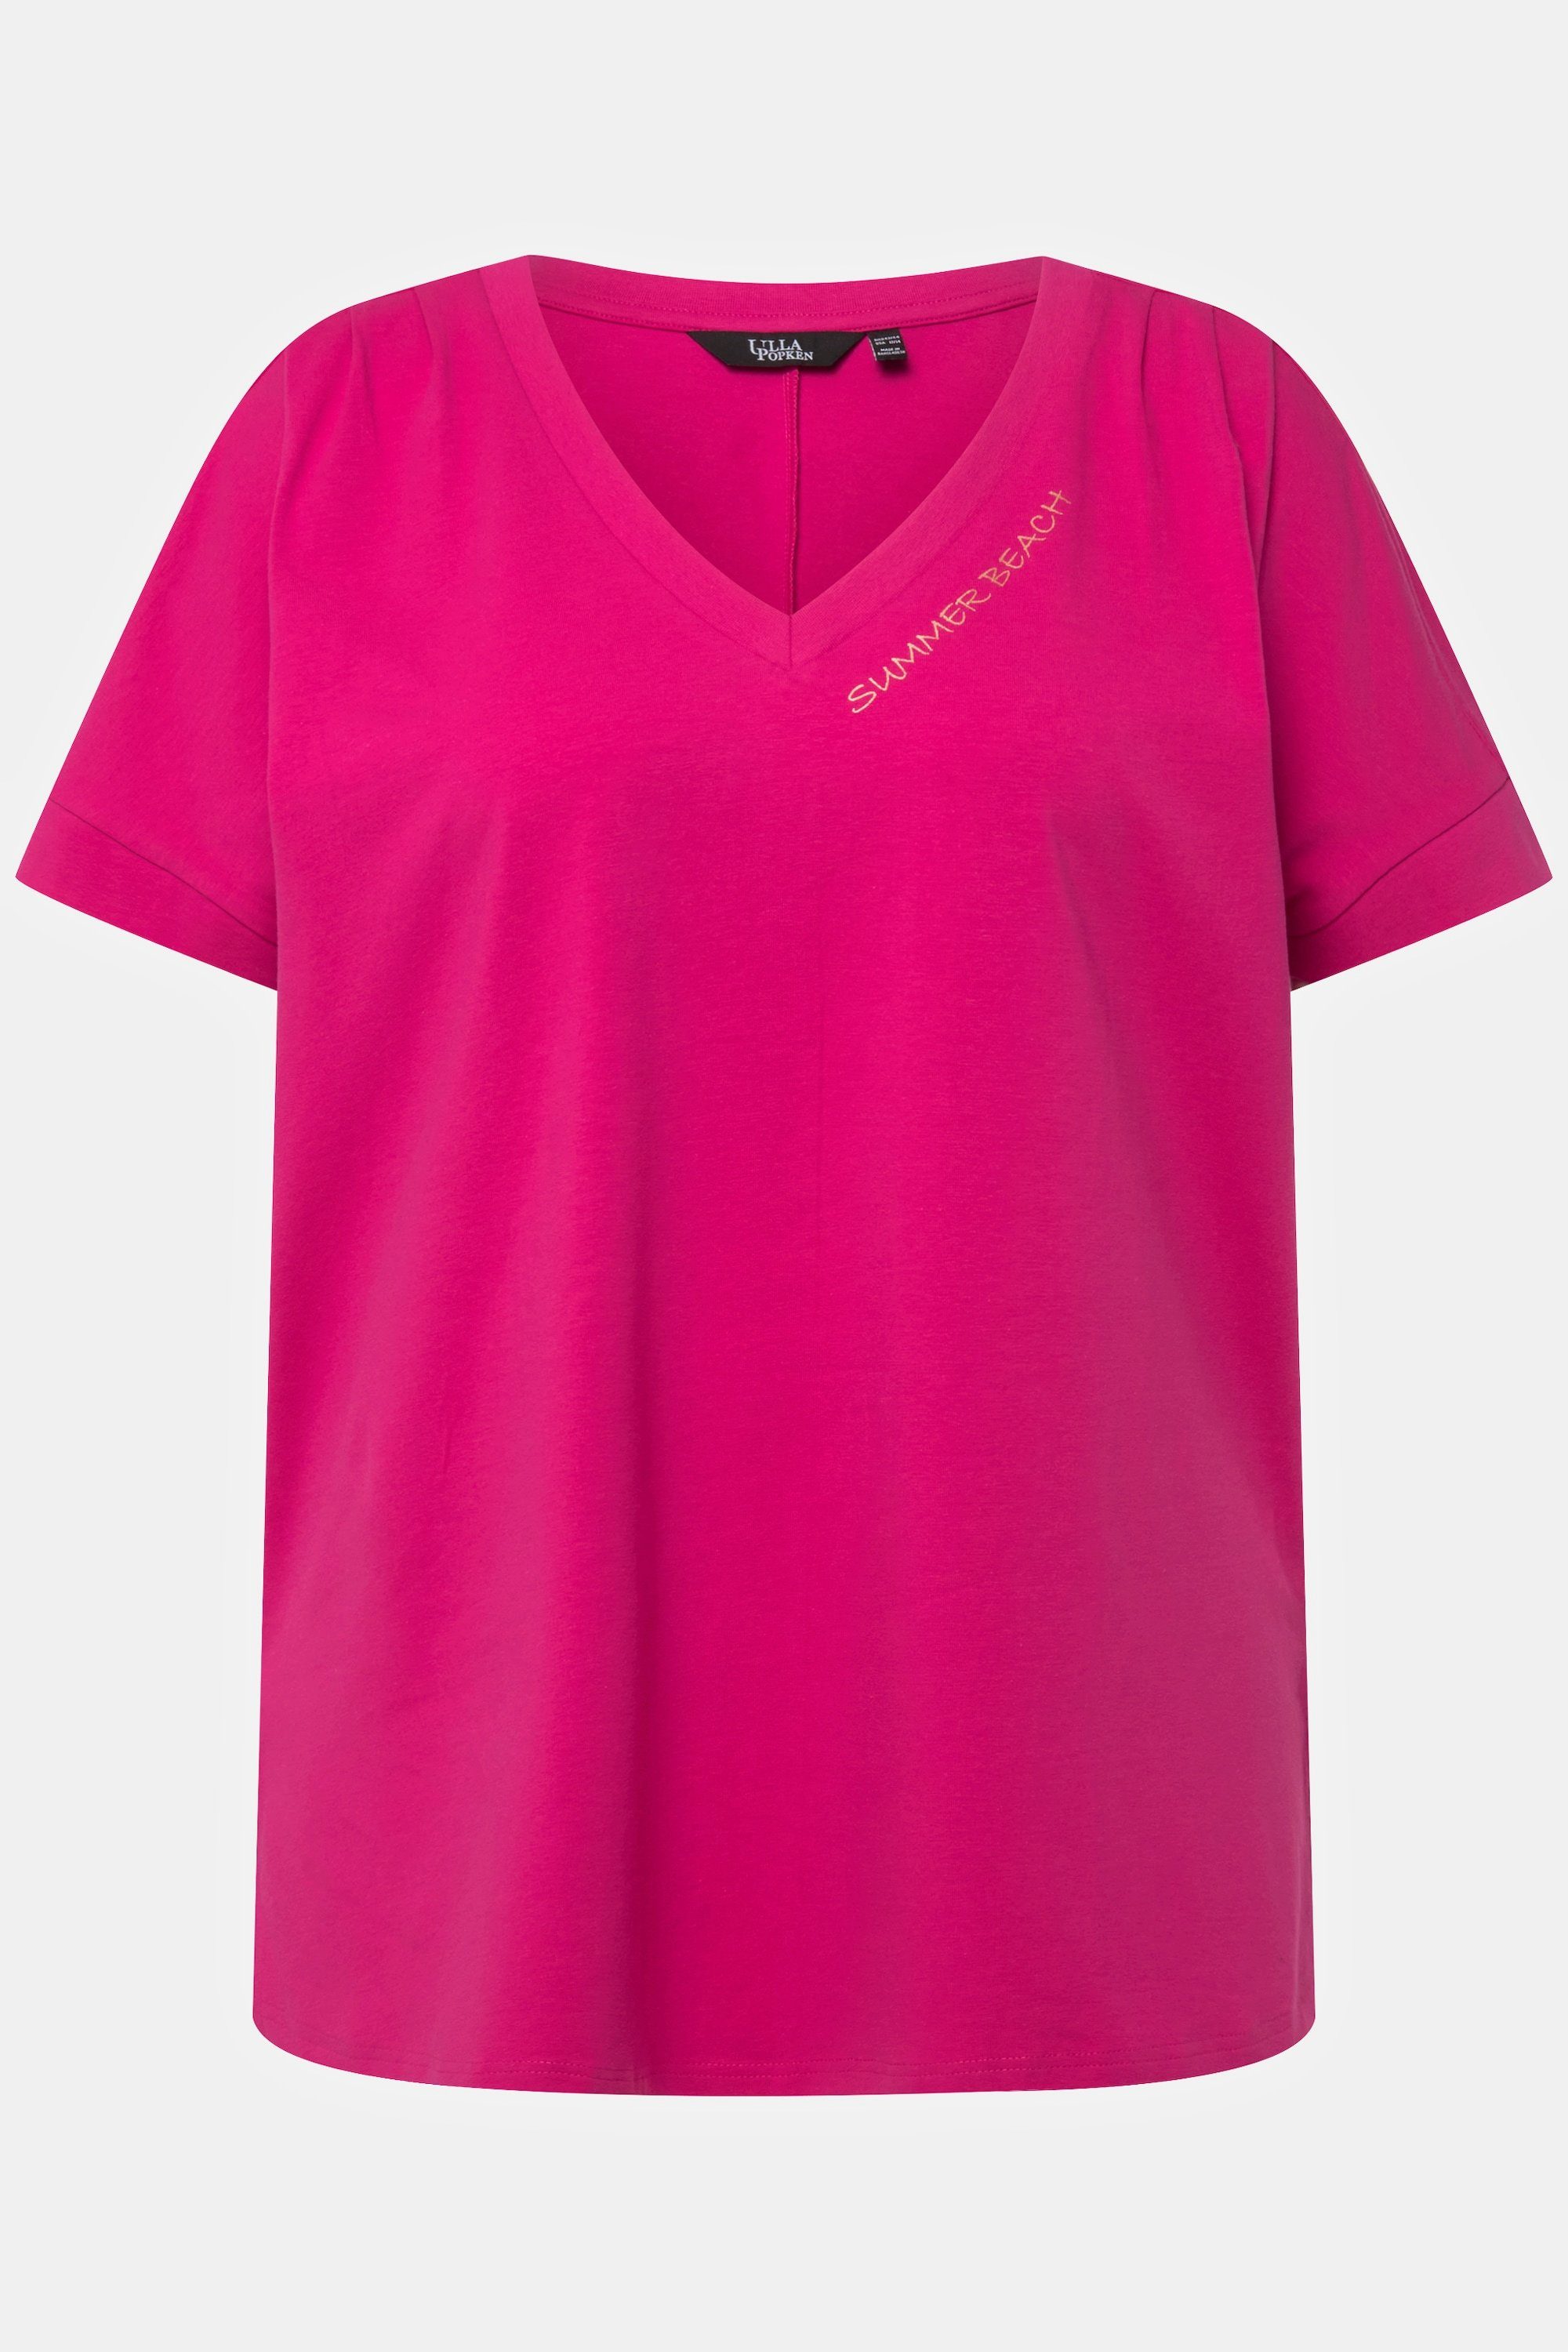 Oversized Zierfalten fuchsia Rundhalsshirt pink Longshirt V-Ausschnitt Ulla Popken